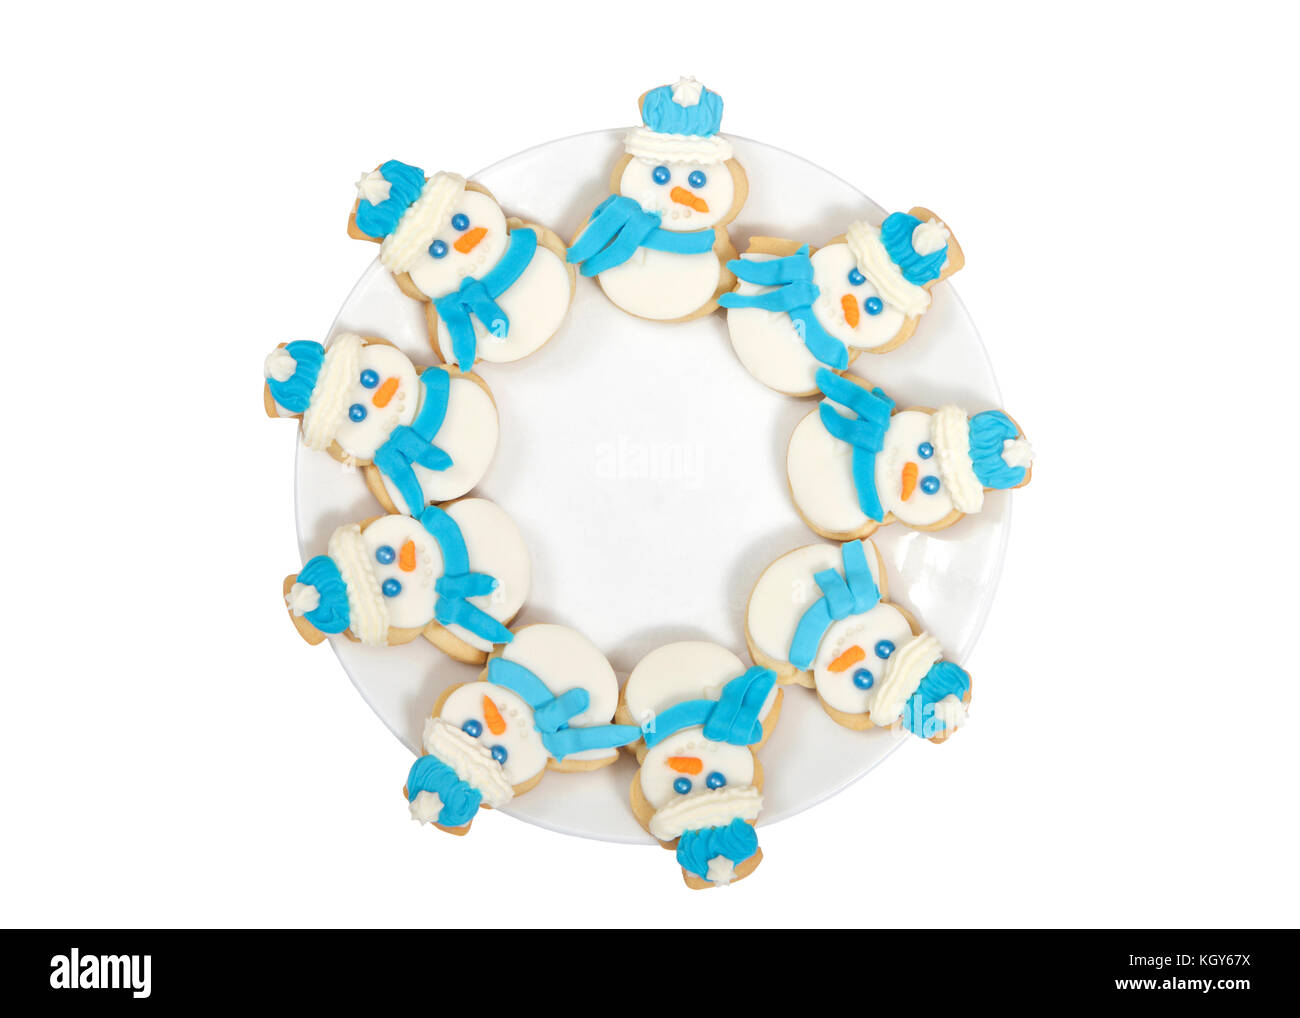 Le SNOWMAN sugar cookies décorés de marshmallow fondant, le glaçage royal bleu foulard et chapeau disposées en cercle sur une assiette de porcelaine. isolated on white Banque D'Images